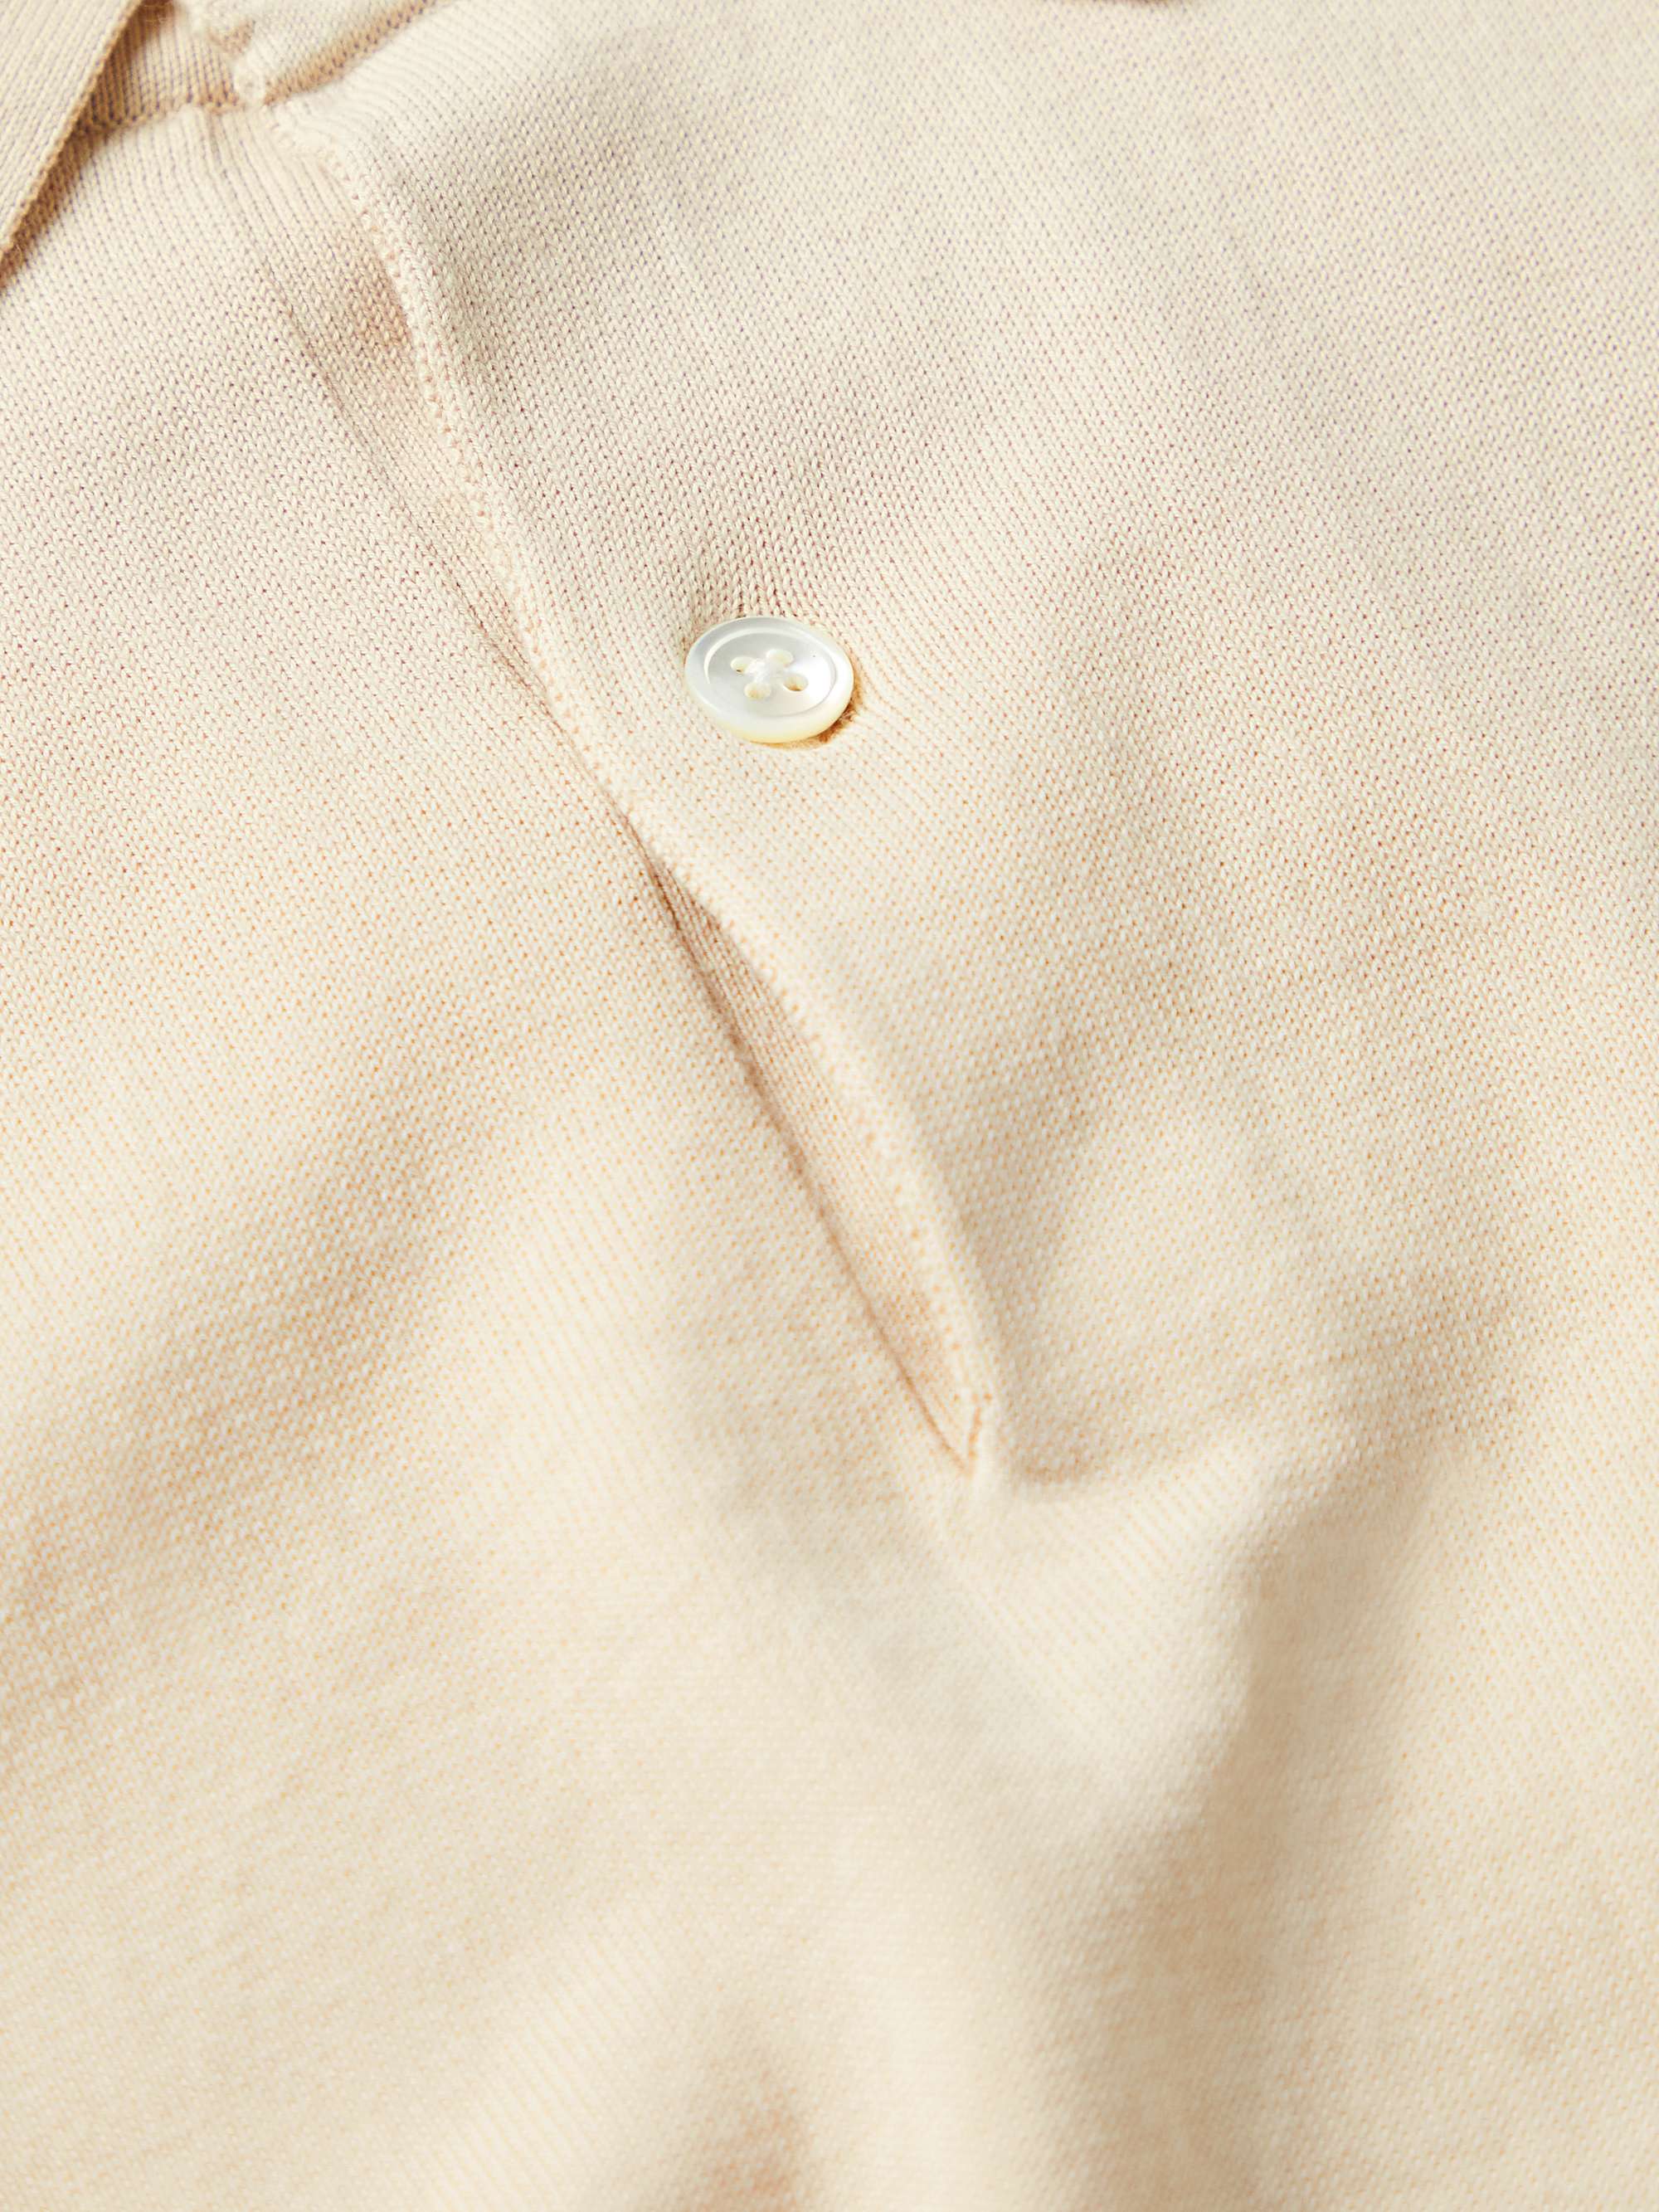 HARTFORD Cotton Polo Shirt